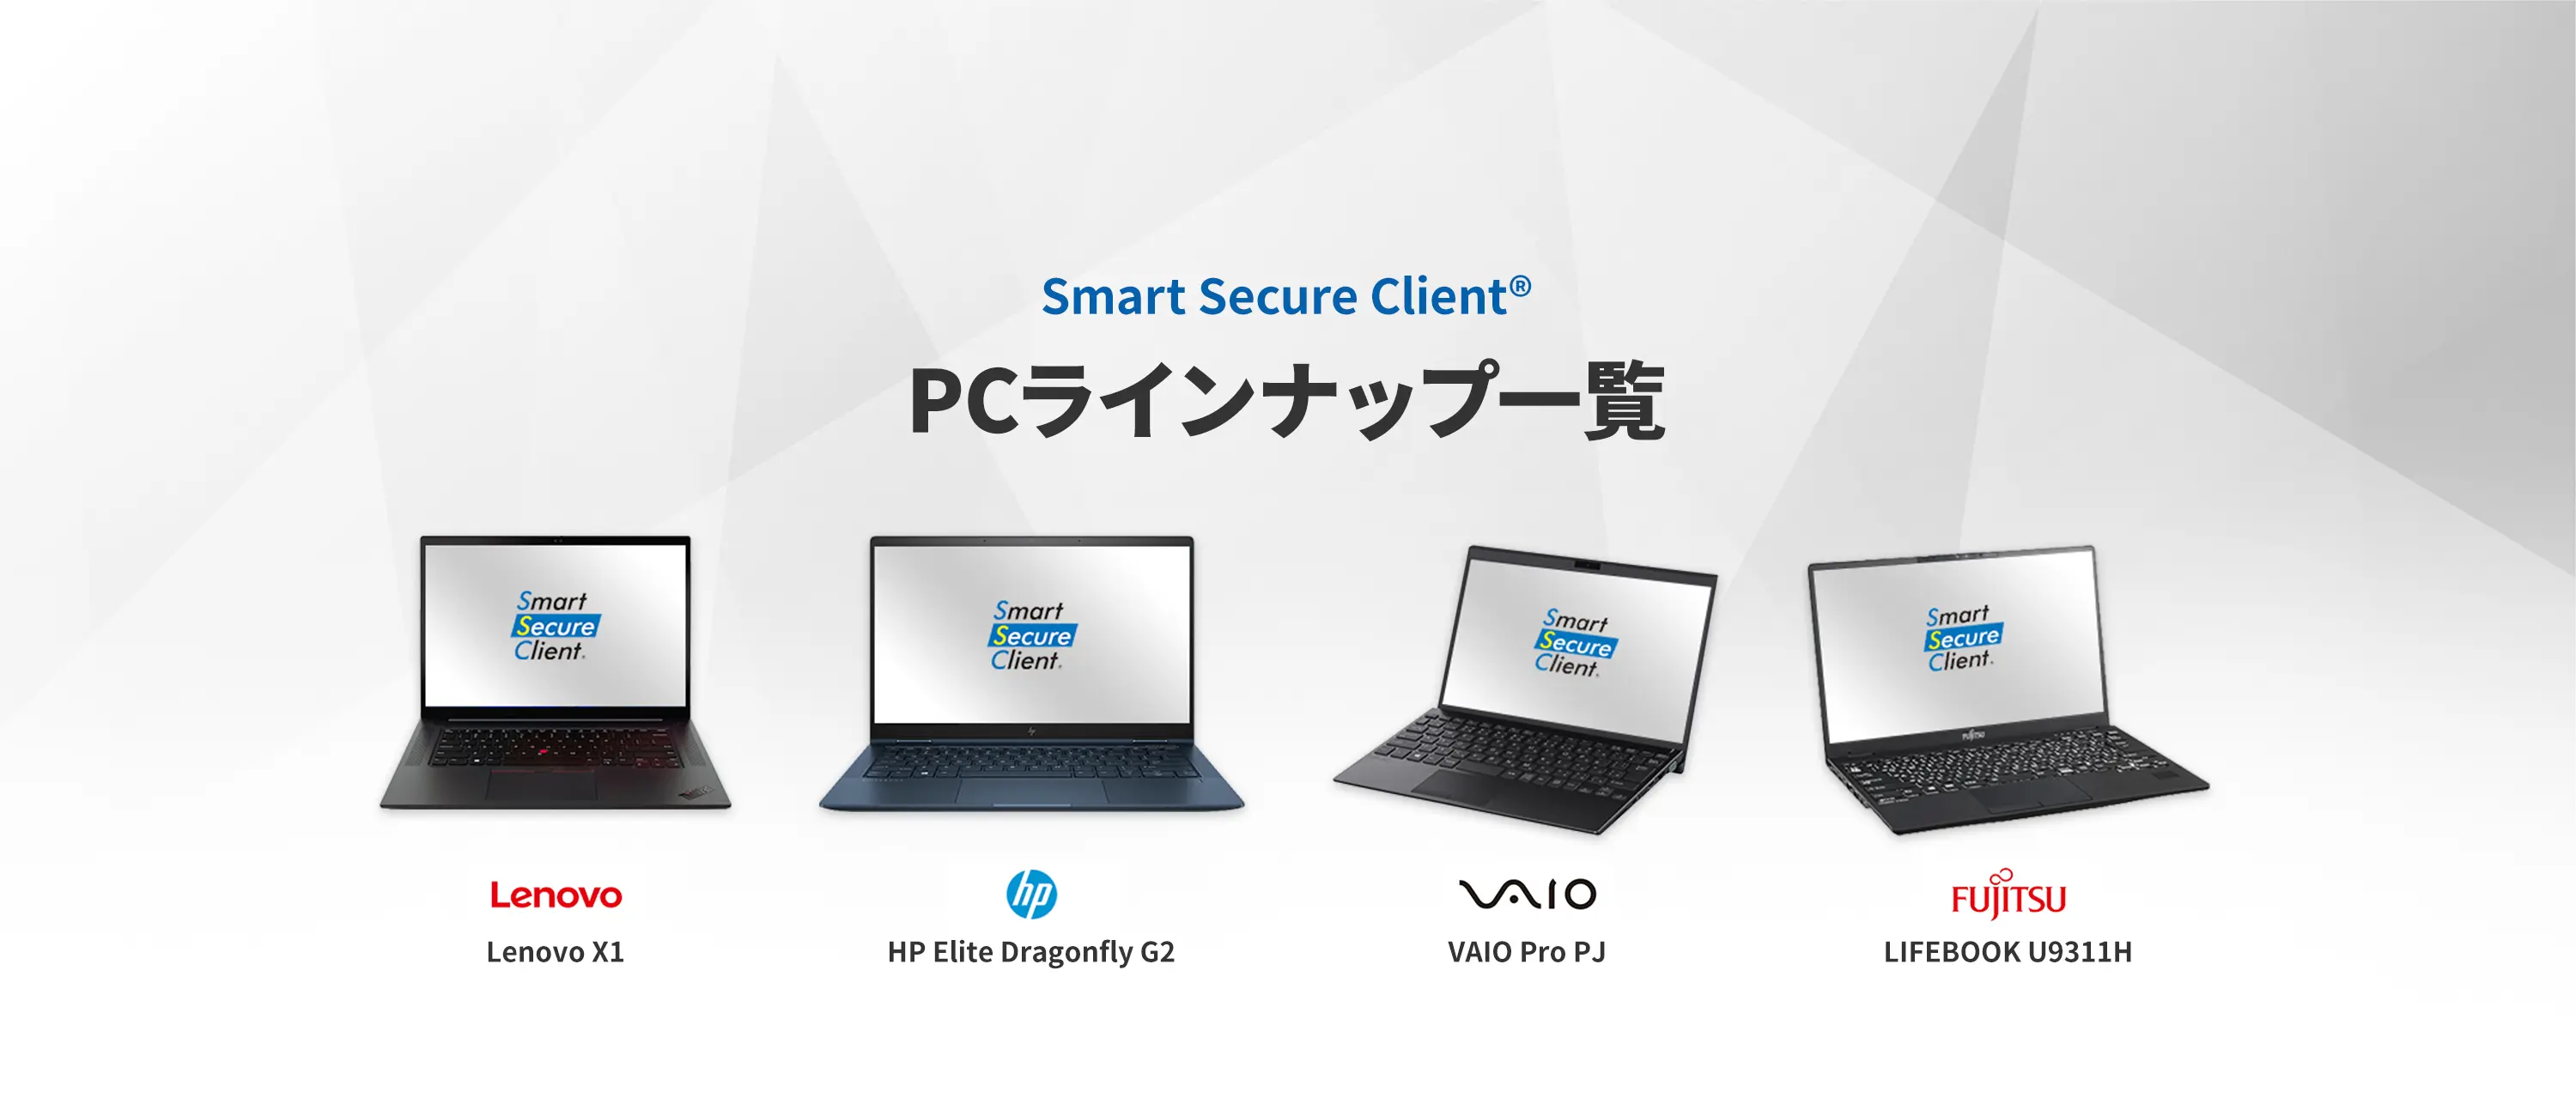 Smart Secure Client® PCラインアップ一覧